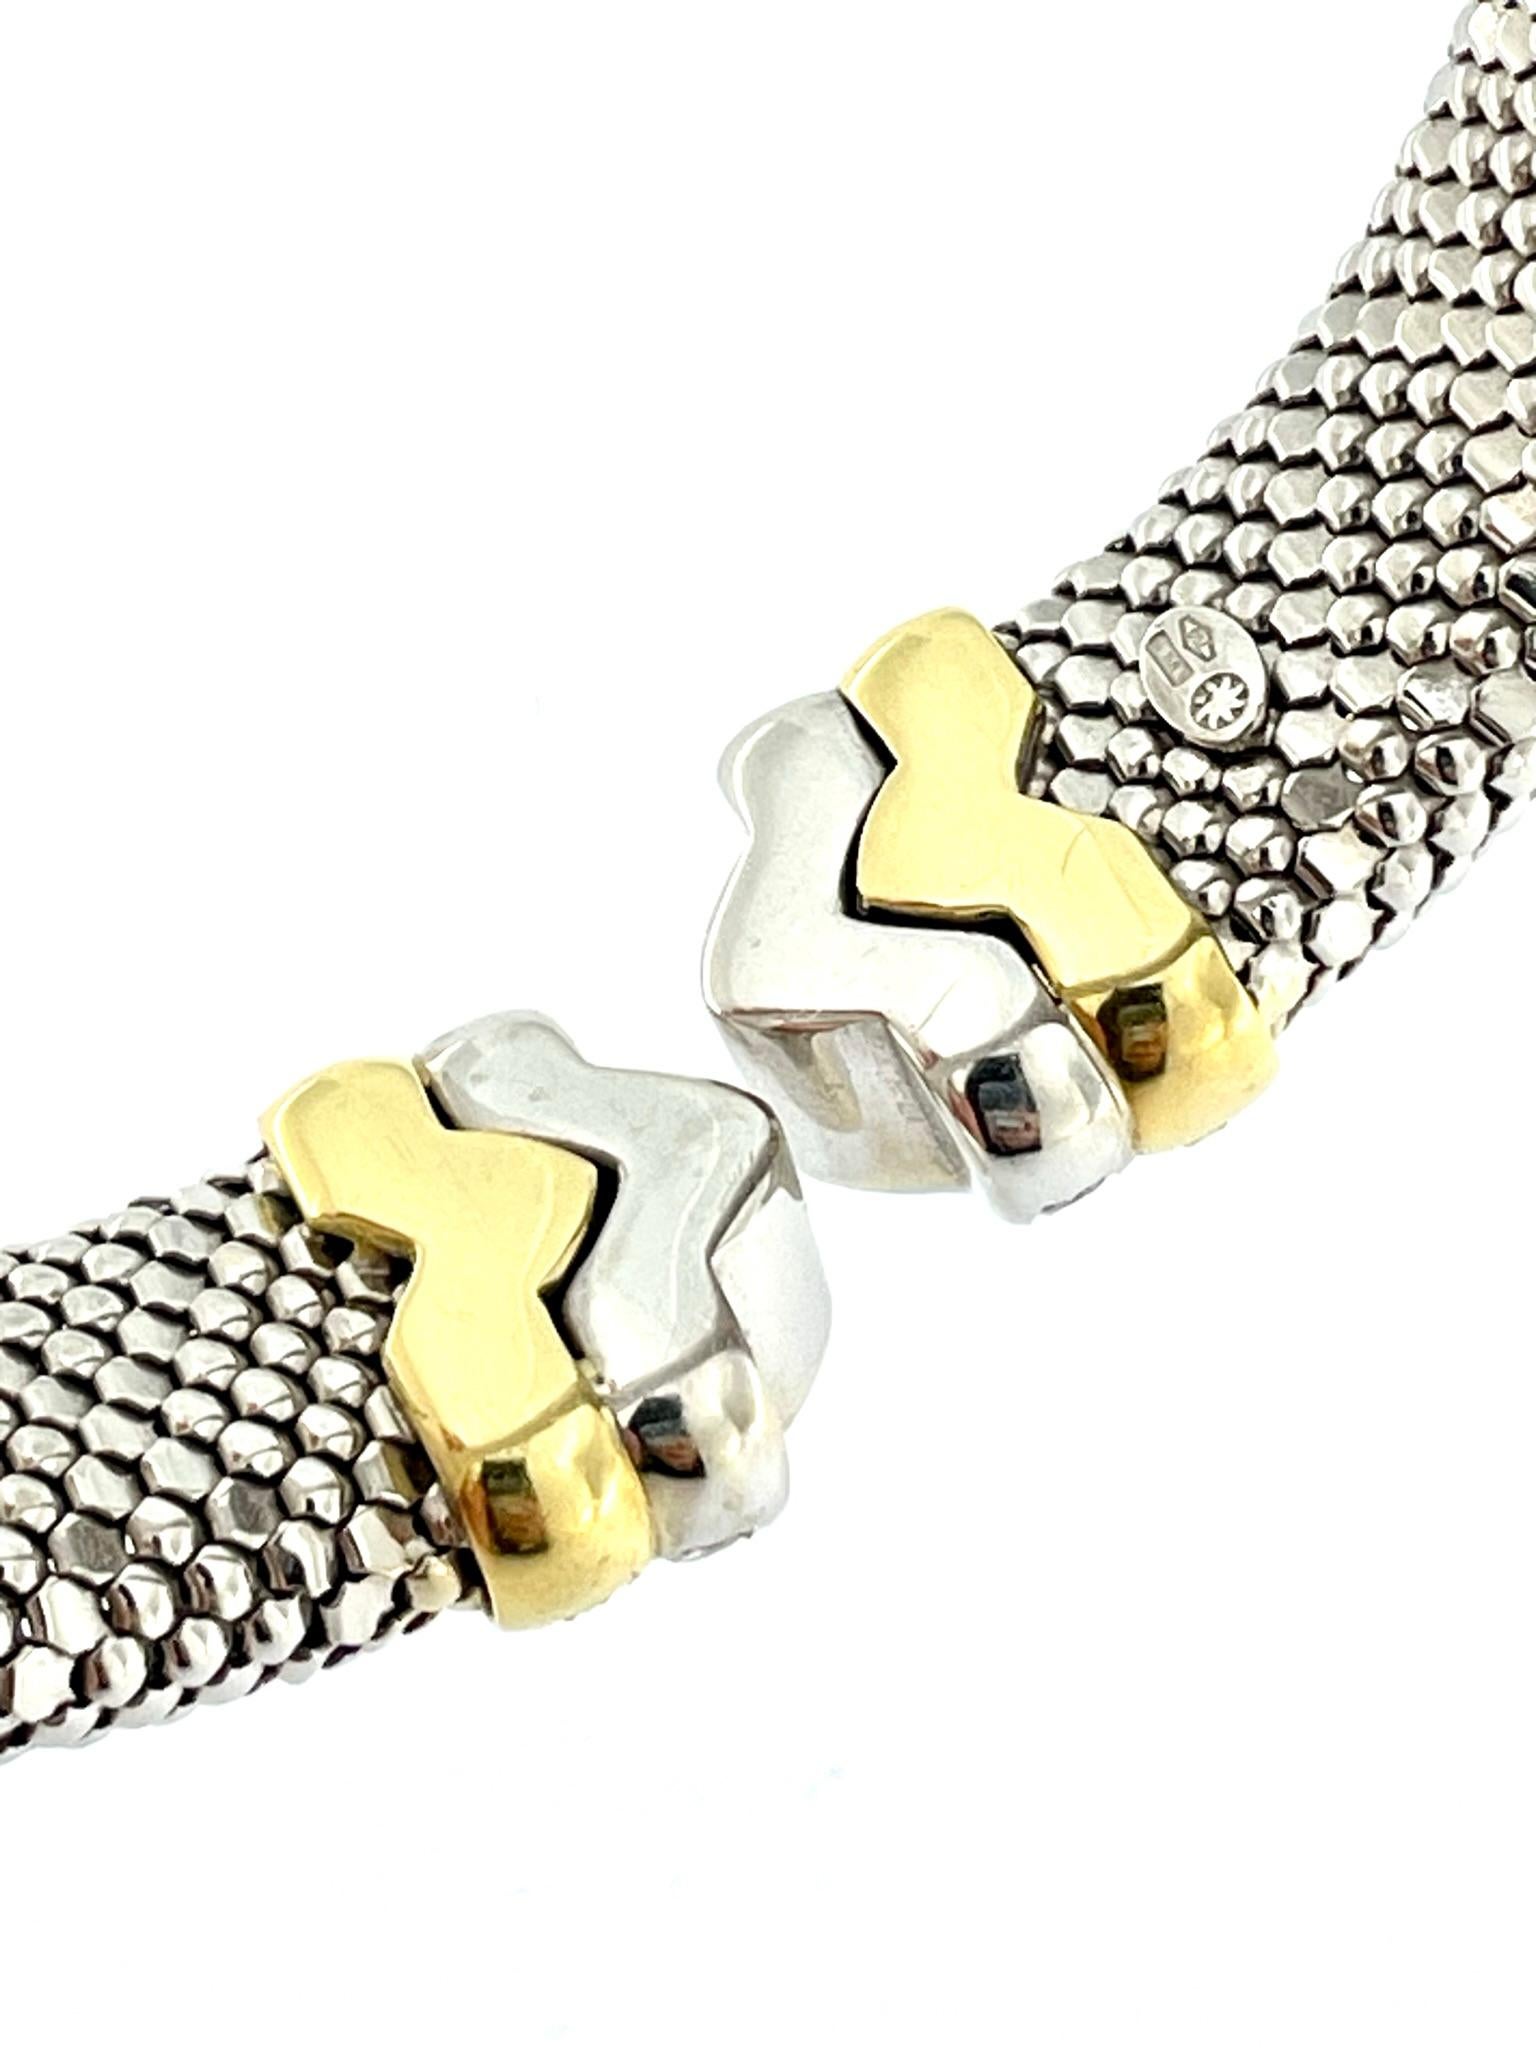 Fashion Italian “Bersani” 18kt Gold Flexible Clamper Bracelet with Diamonds  In Excellent Condition For Sale In Esch sur Alzette, Esch-sur-Alzette